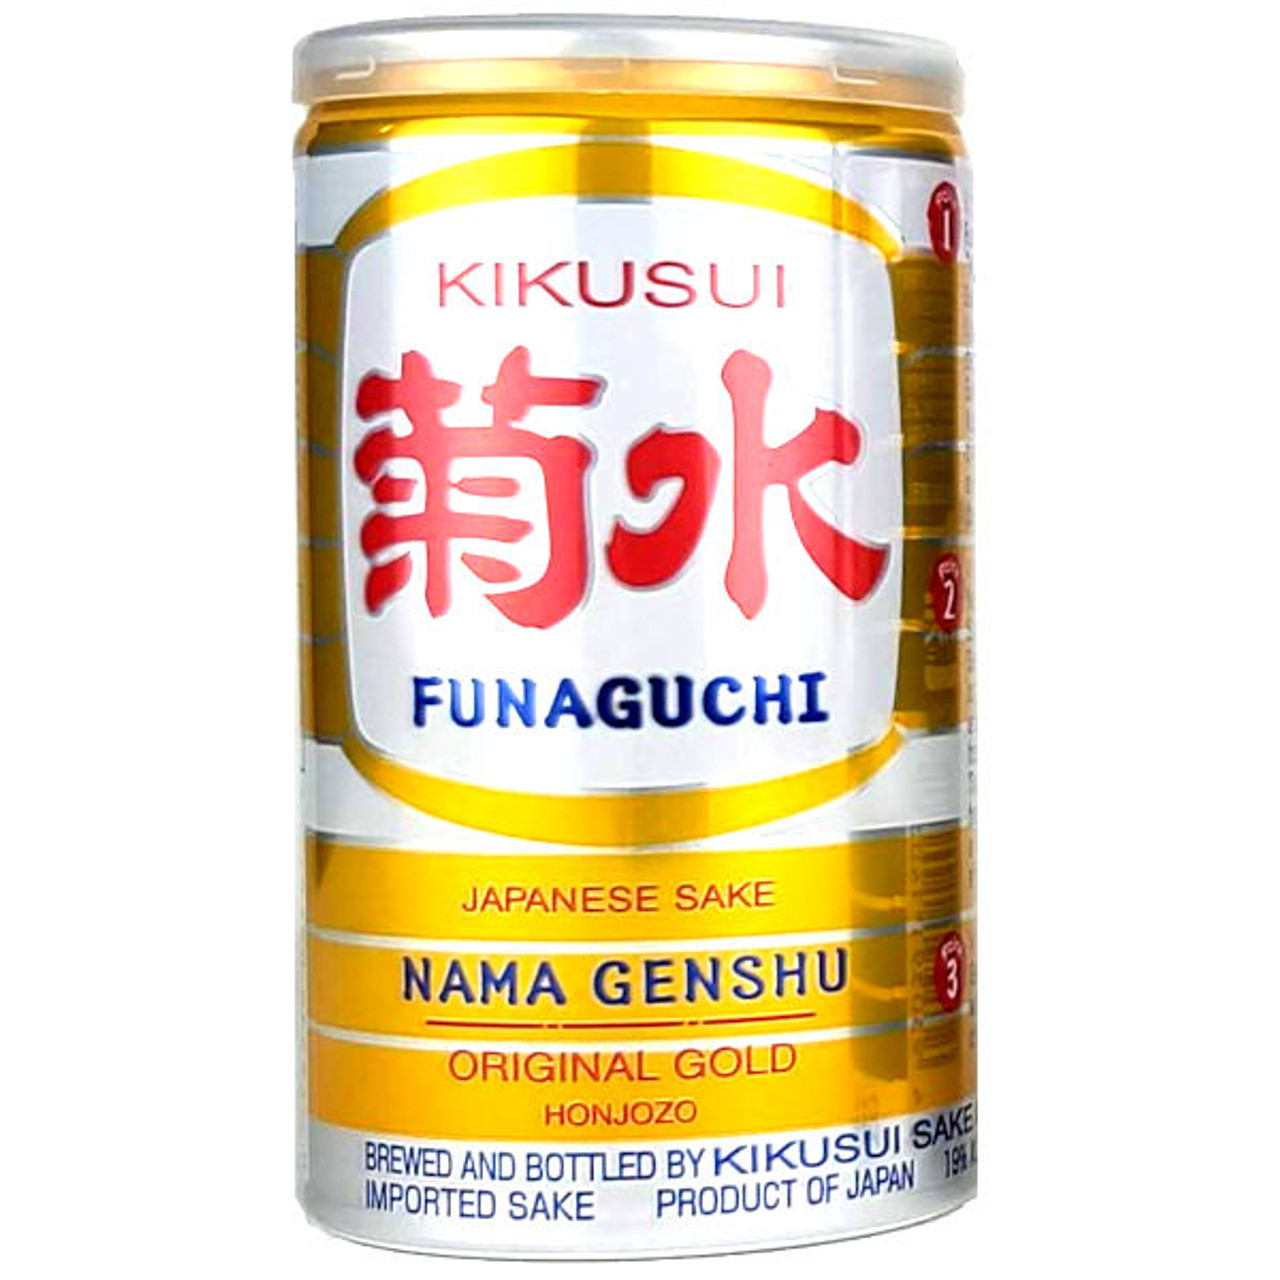 Kikusui Funaguchi Nama Genshu Honjozo Original Gold Sake 200ml